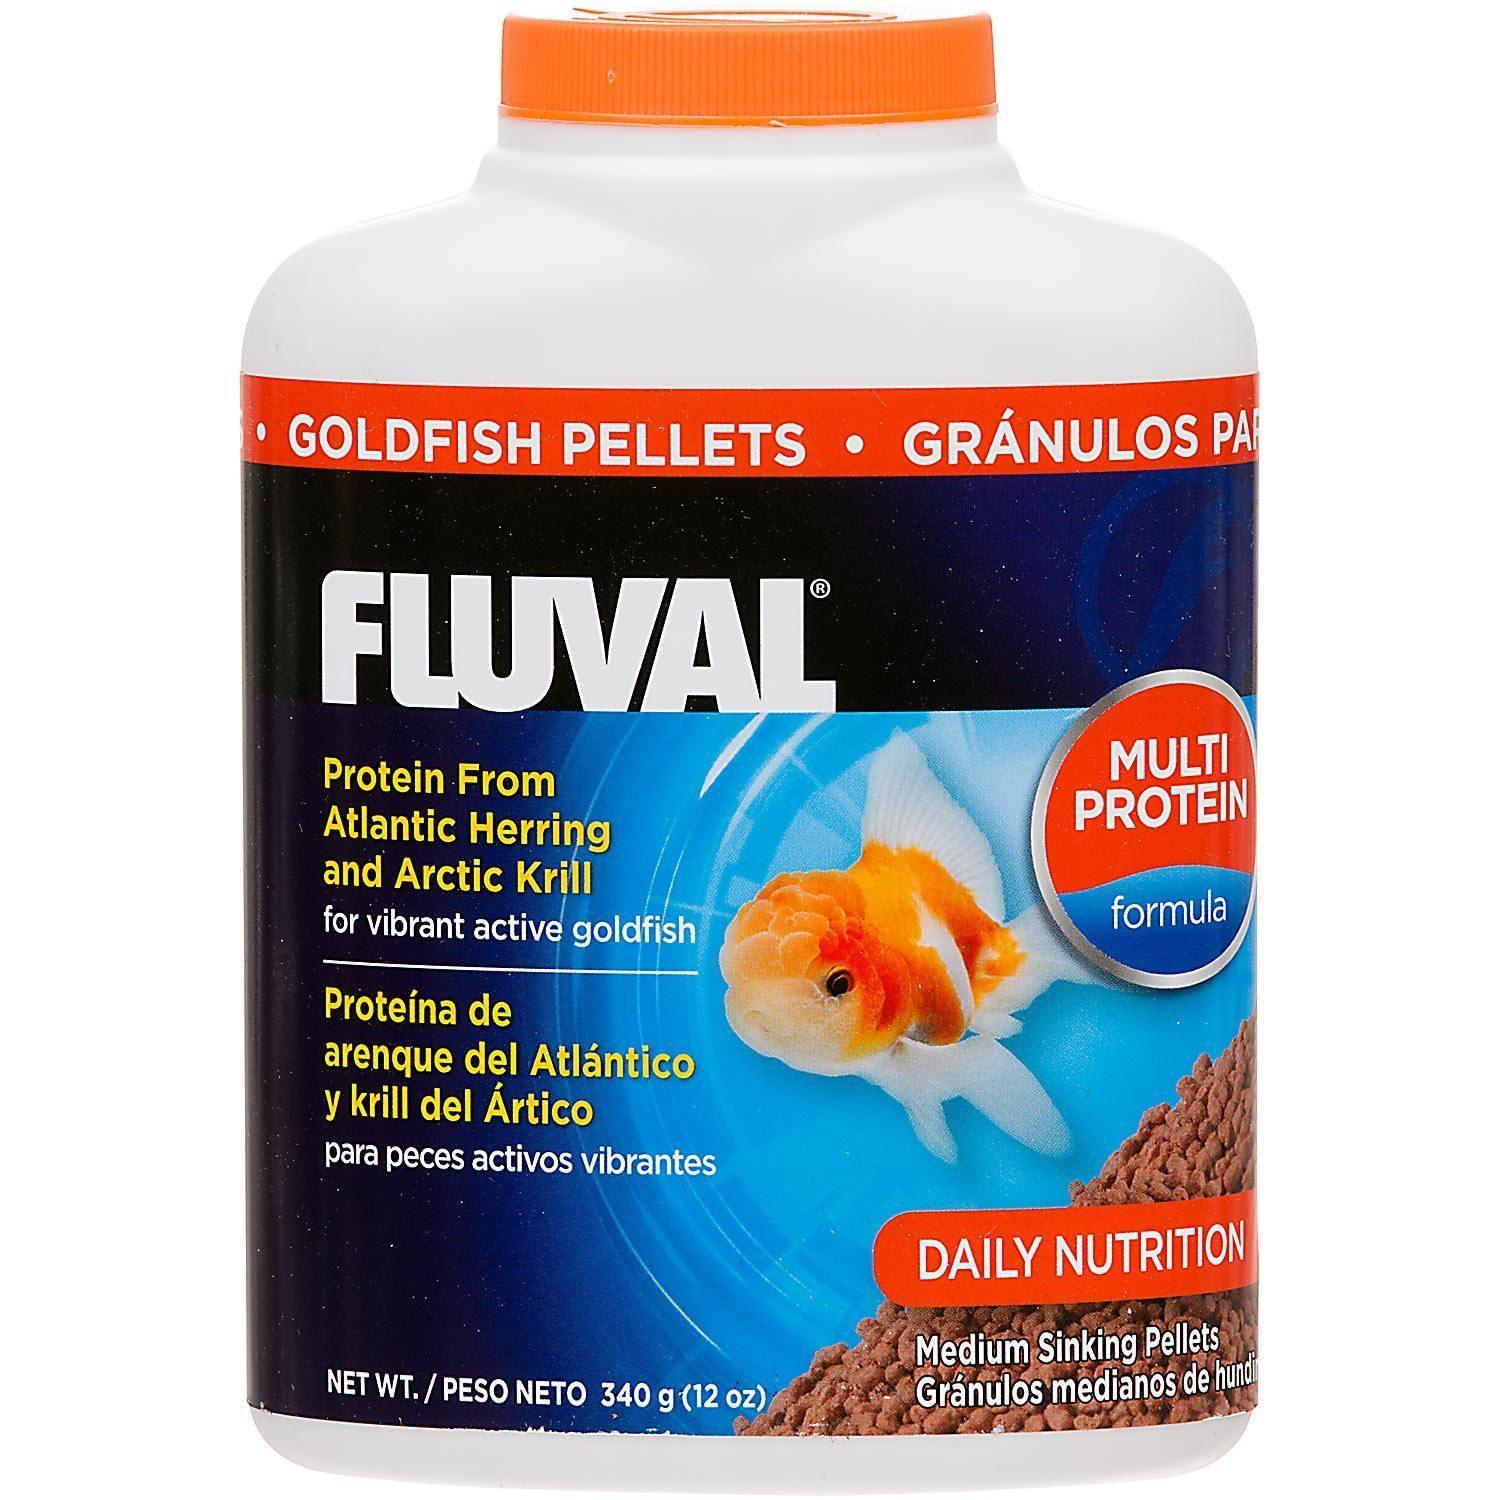 Fluval Sinking Goldfish Pellets 150g - Amazing Amazon